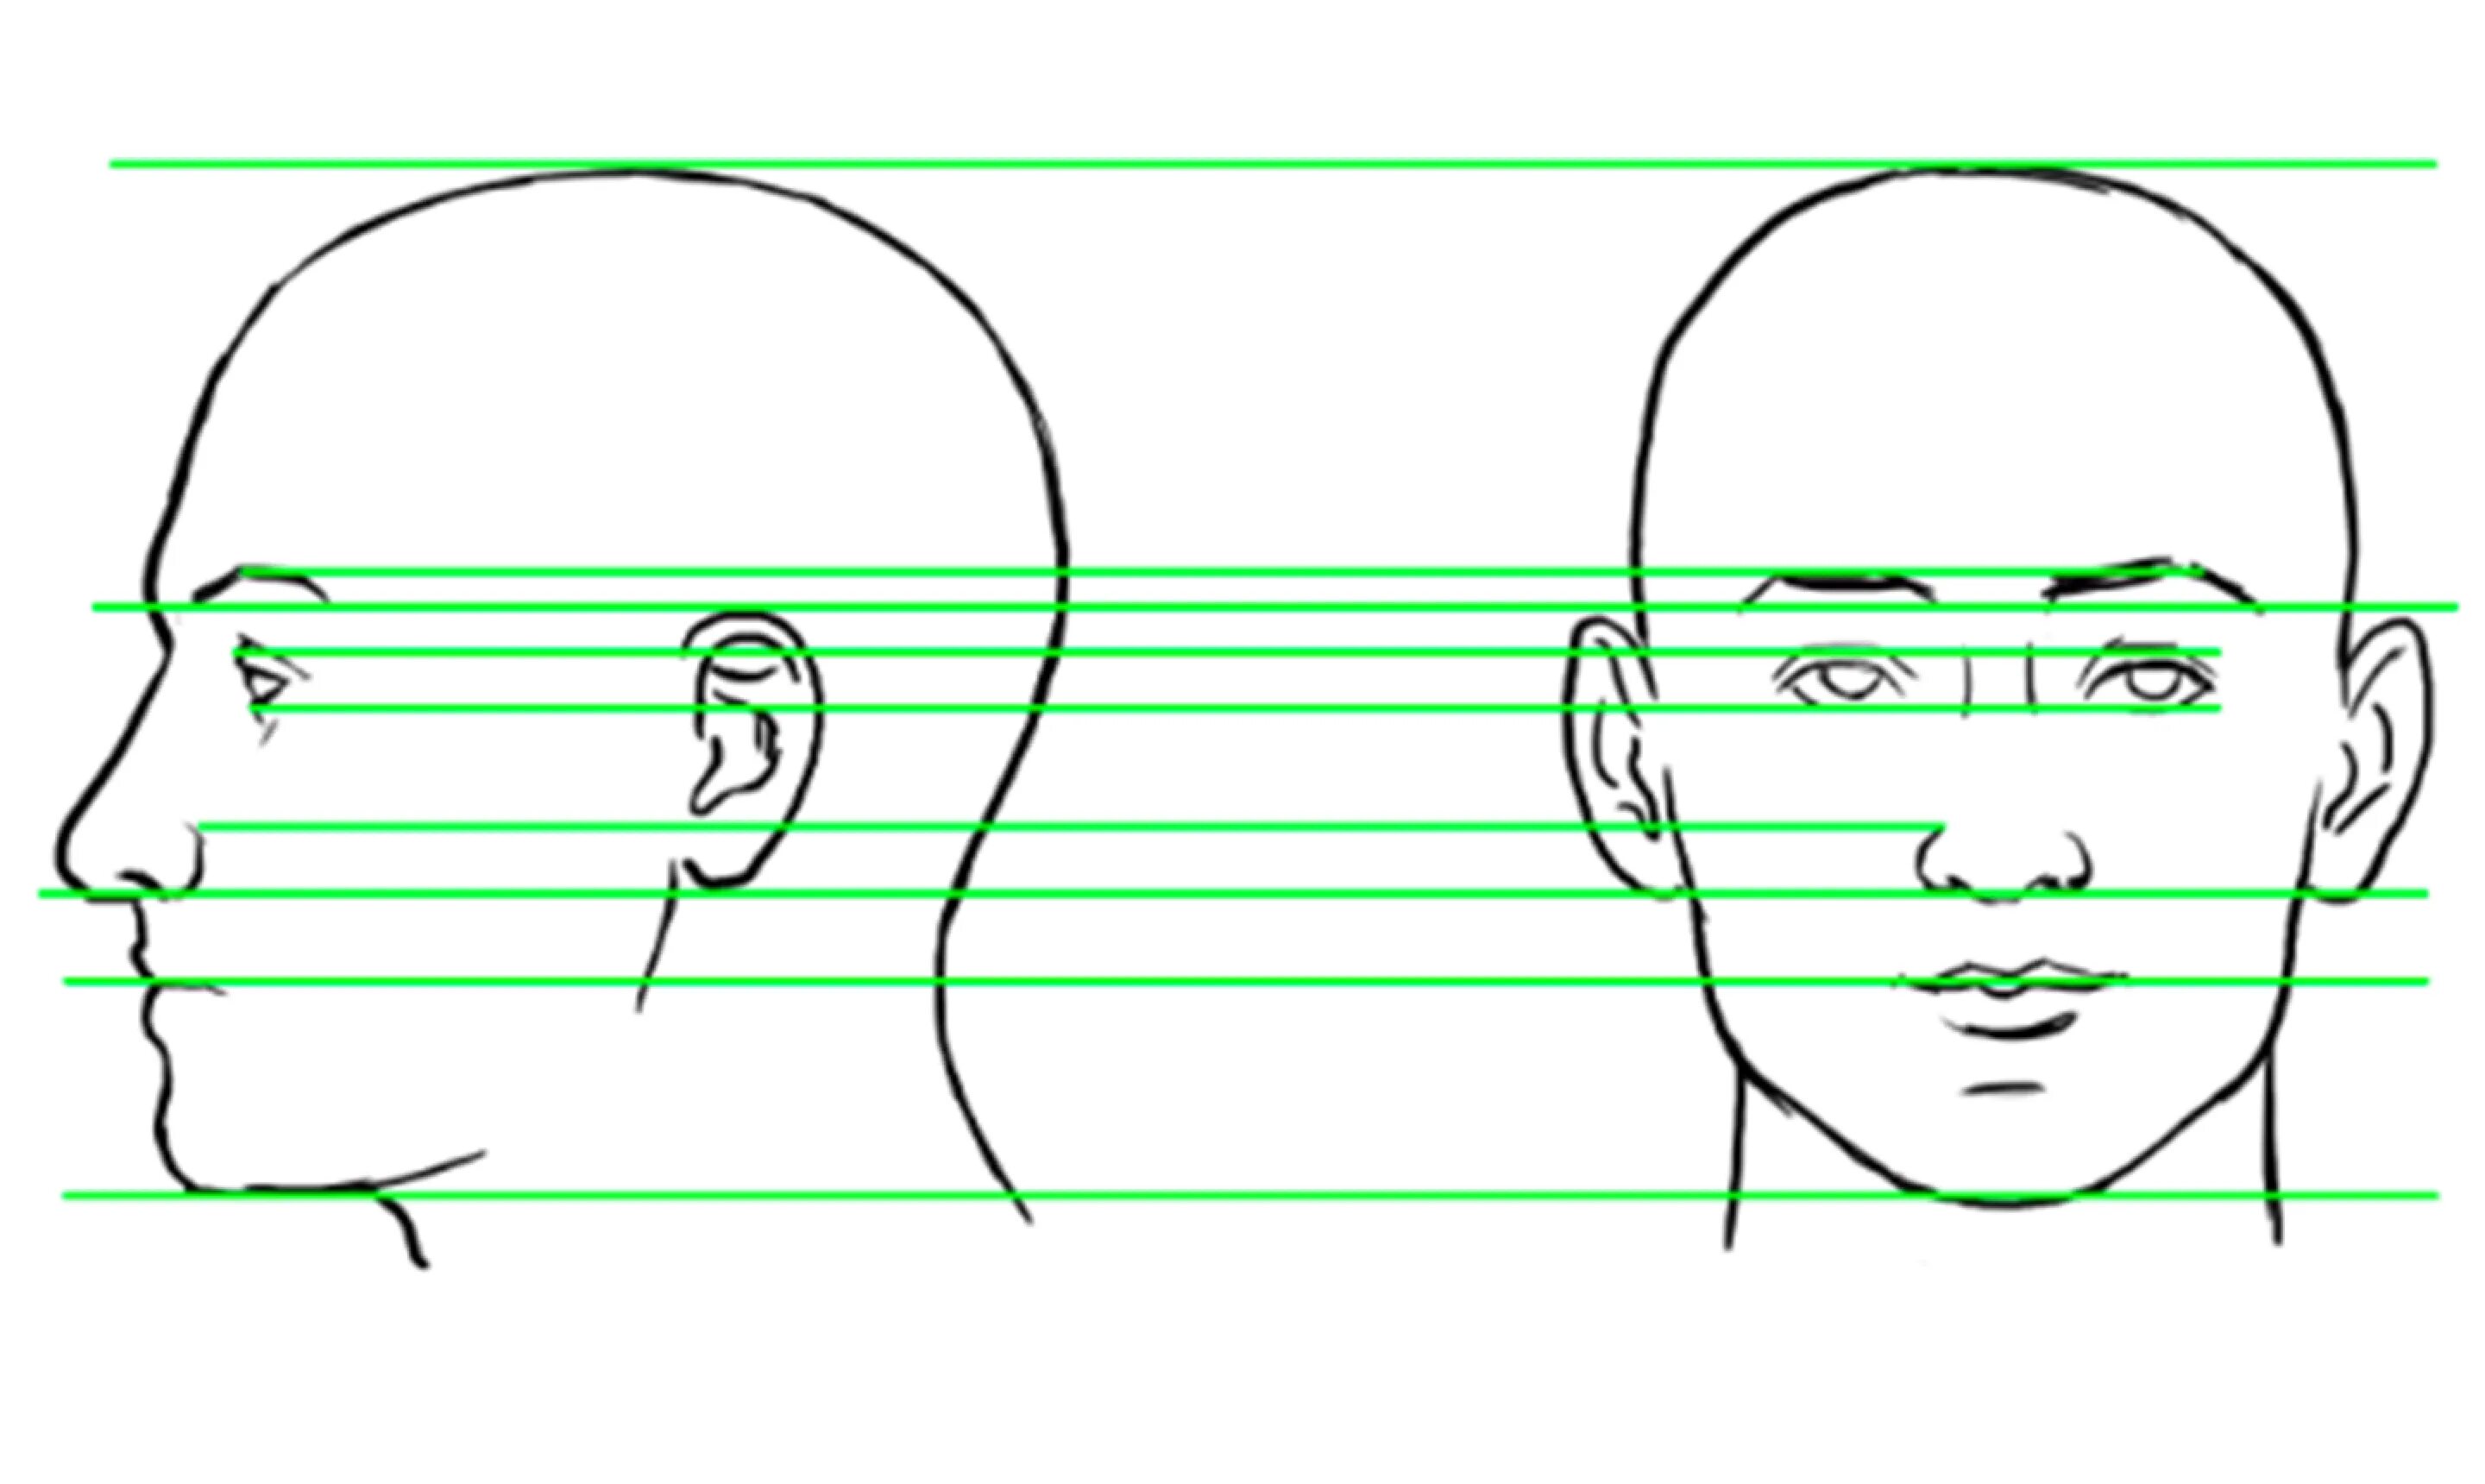 Полная информация о профиле человека. Голова человека в анфас и профиль. Лицо ФАС И профиль рисунок. Разметка головы. Схематичное изображение человека в профиль.